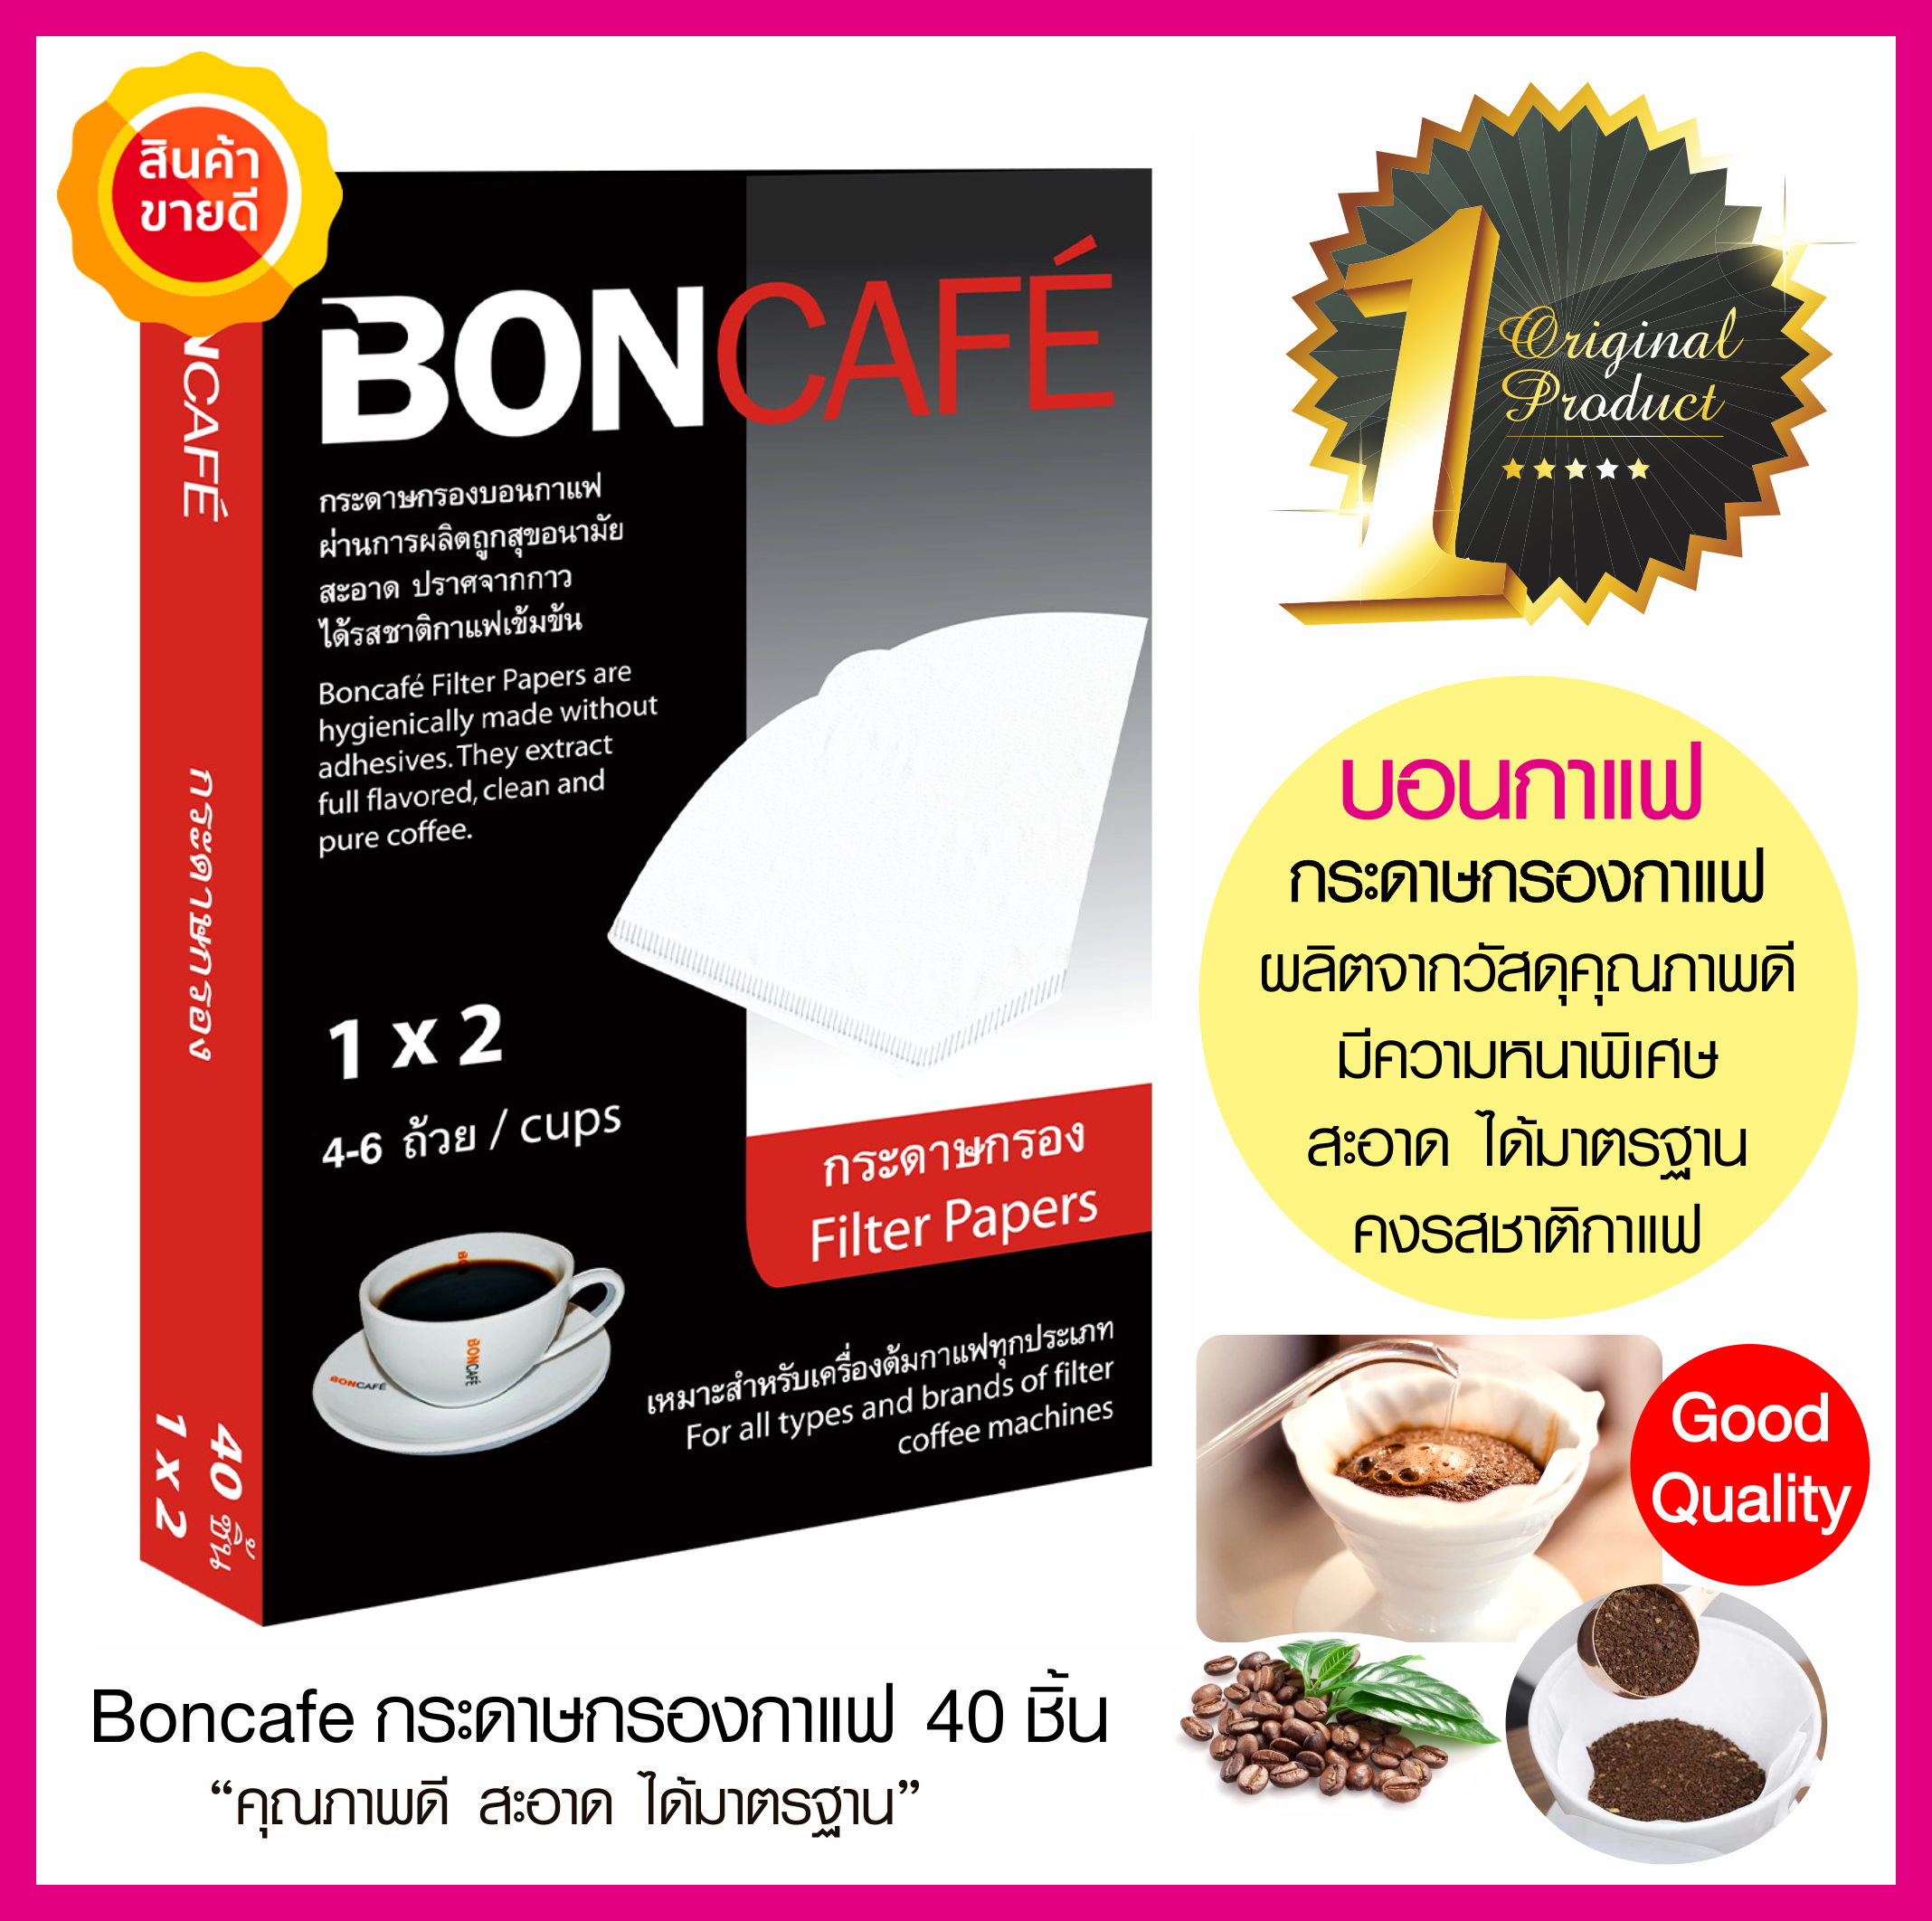 บอนคาเฟ่ กระดาษกรองกาแฟ Boncafe Filter Paper Coffee 40ชิ้น ใช้สำหรับชงกาแฟคั่วบด กาแฟสด กาแฟดริป ผลิตจากวัสดุคุณภาพดี สะอาด ได้มาตรฐาน คงรสชาติกาแฟ